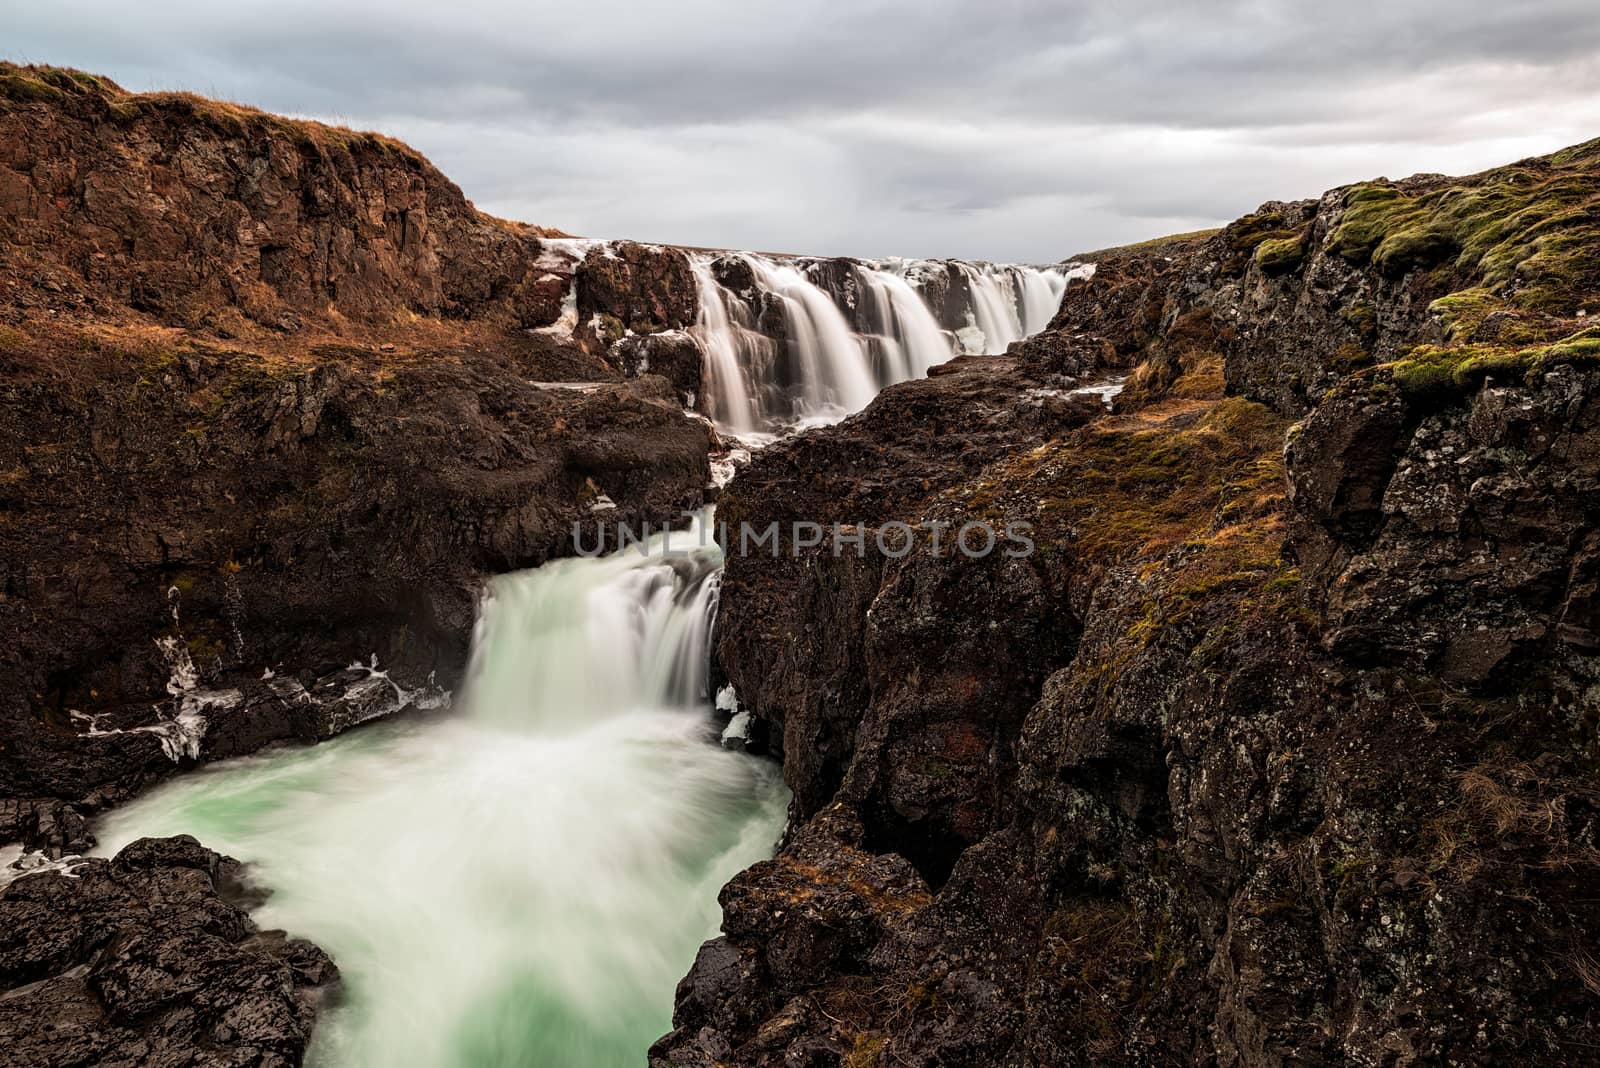 Kolugljufur waterfall in Iceland in a cloudy day